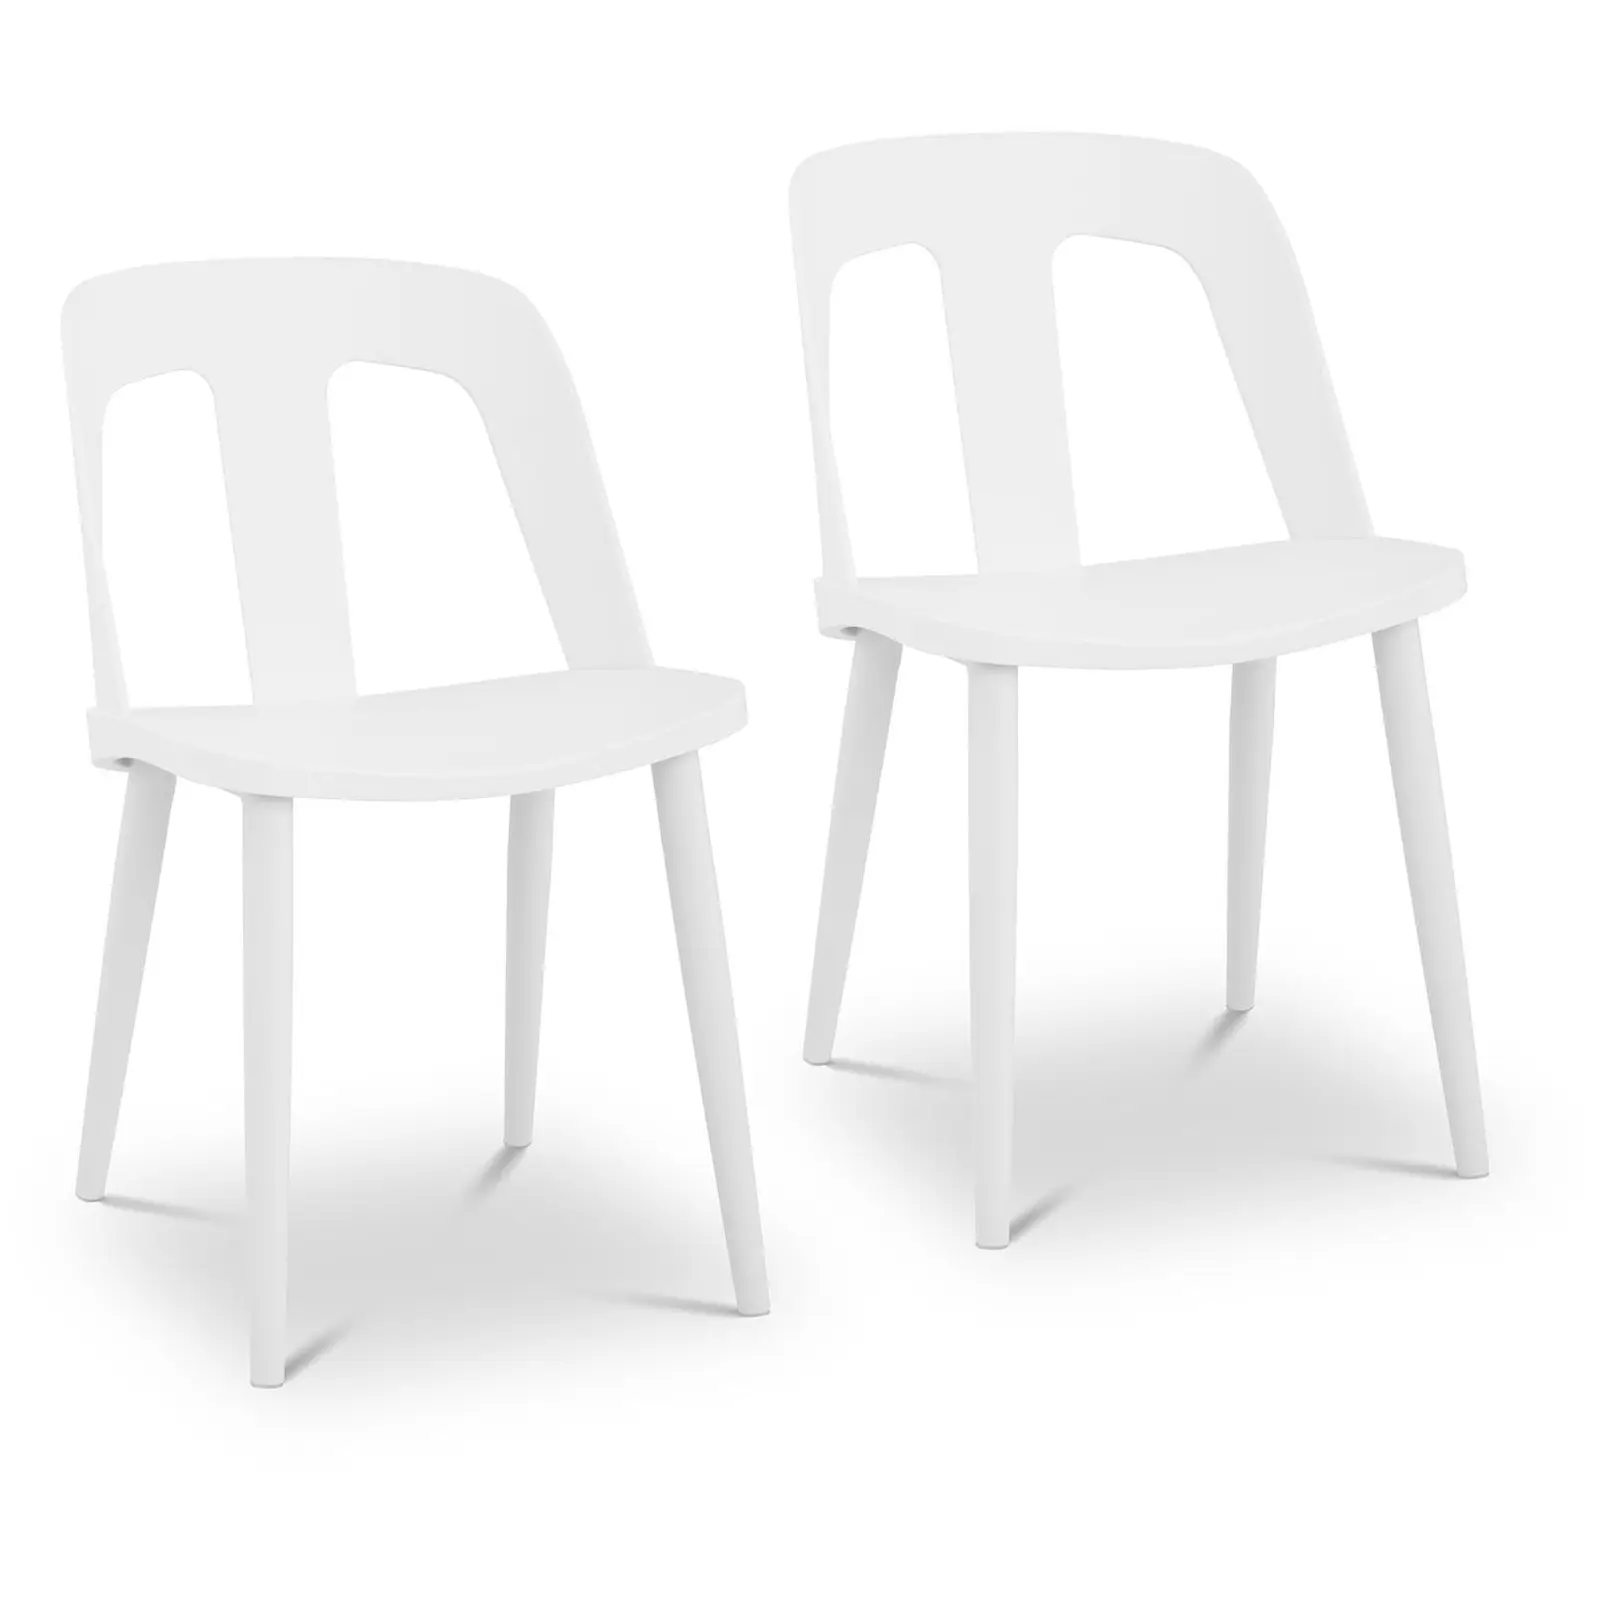 Chaise - Lot de 2 - 150 kg max. - Surface d'assise de 56 x 46,5 cm - Coloris noir et blanc